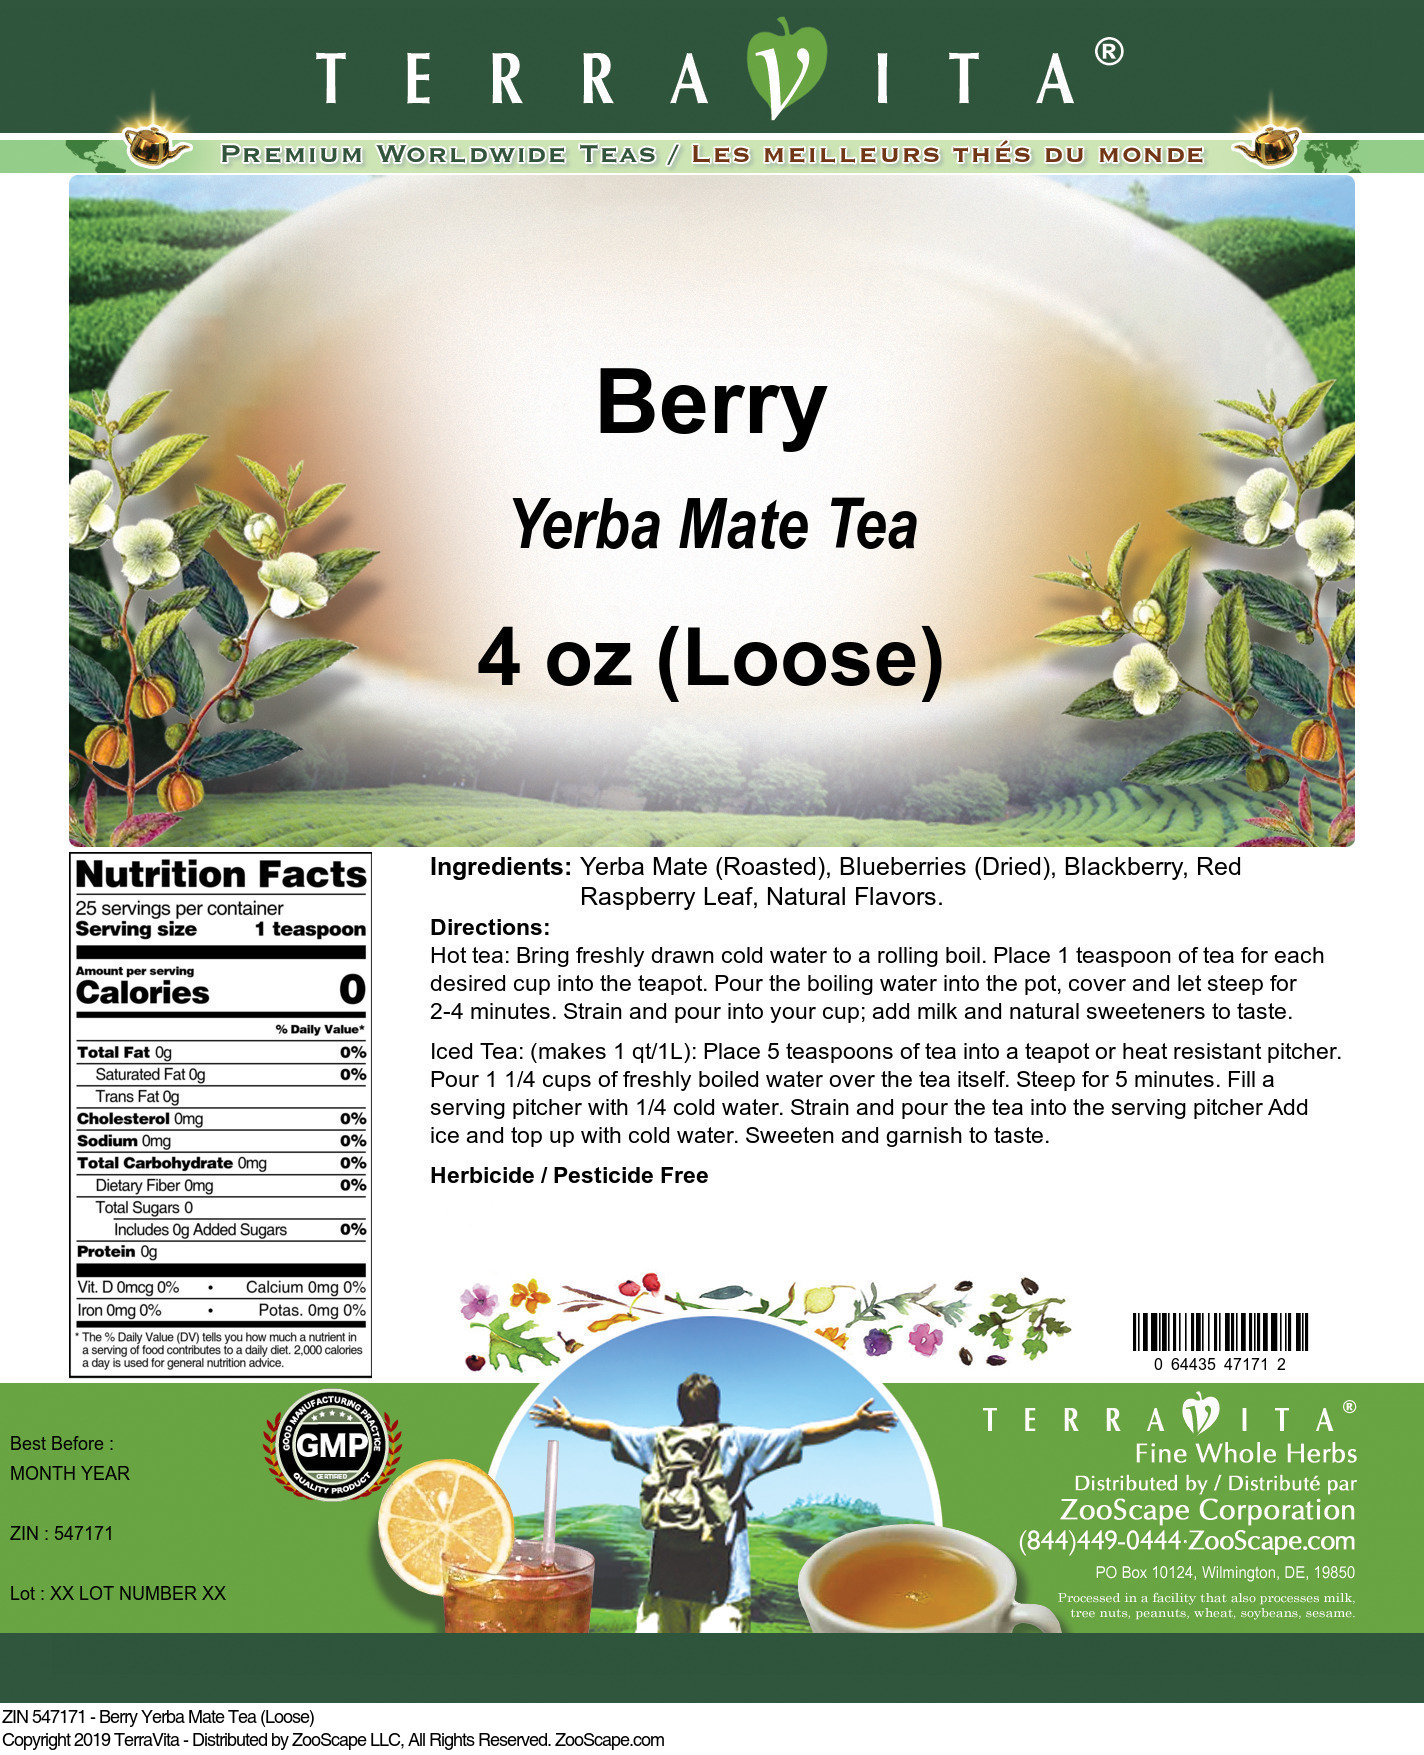 Berry Yerba Mate Tea (Loose) - Label